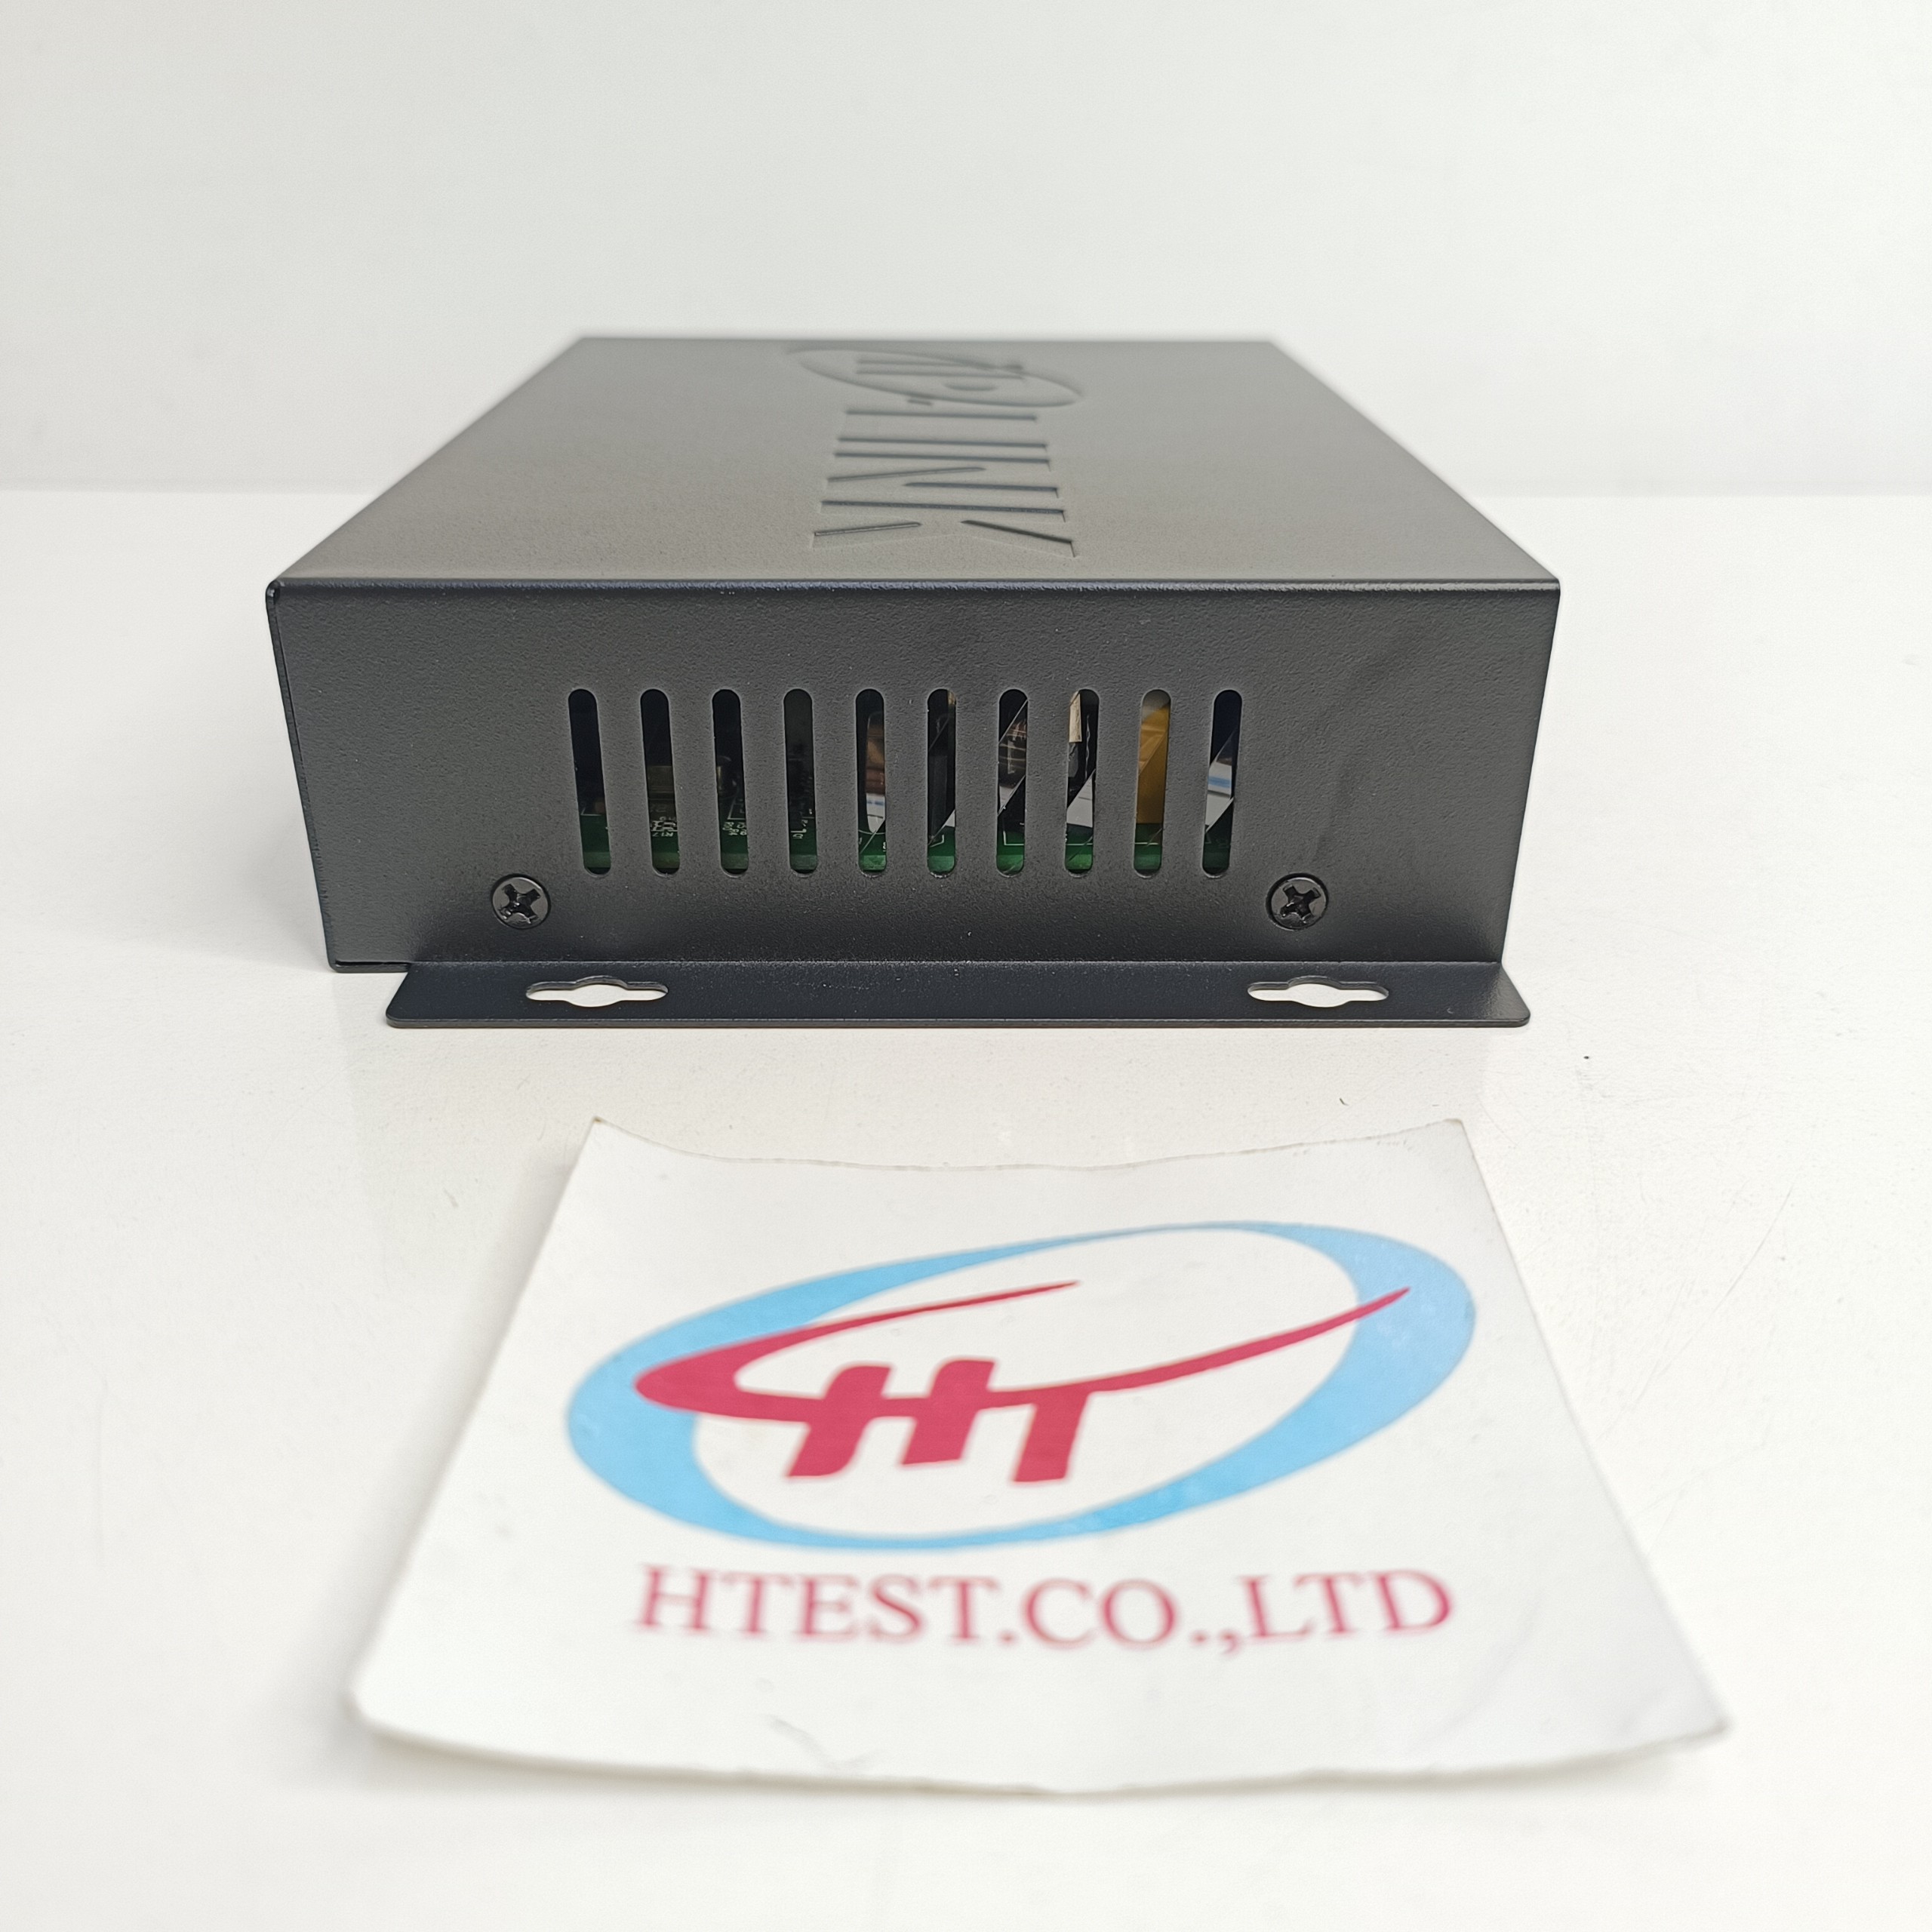 Bộ chia mạng/Switch IP-LINK 04 cổng IPL-04POE